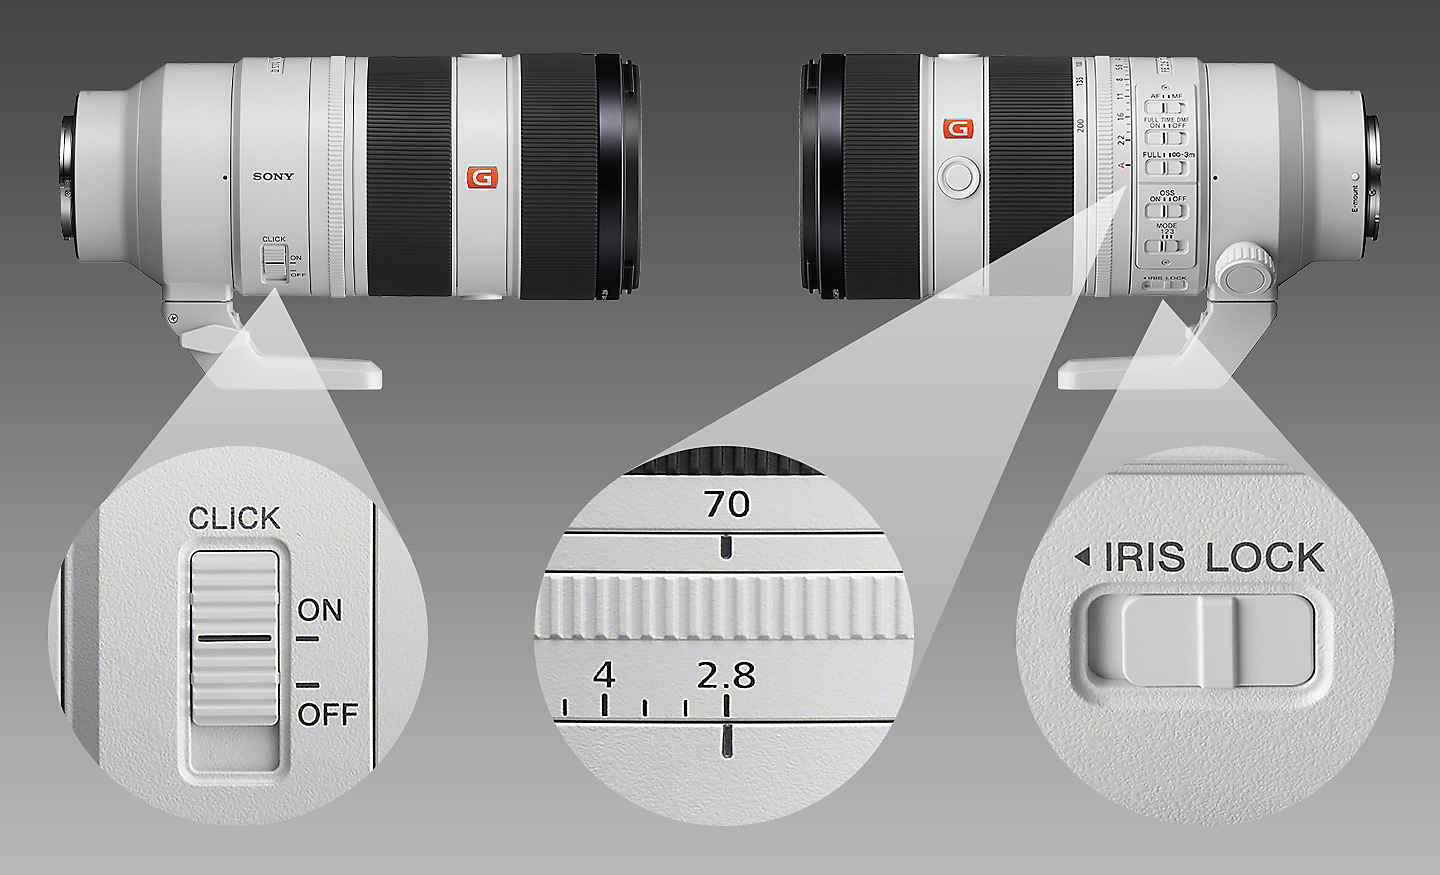 Potongan gambar yang menampilkan posisi Iris click, ring fokus, dan Iris lock.